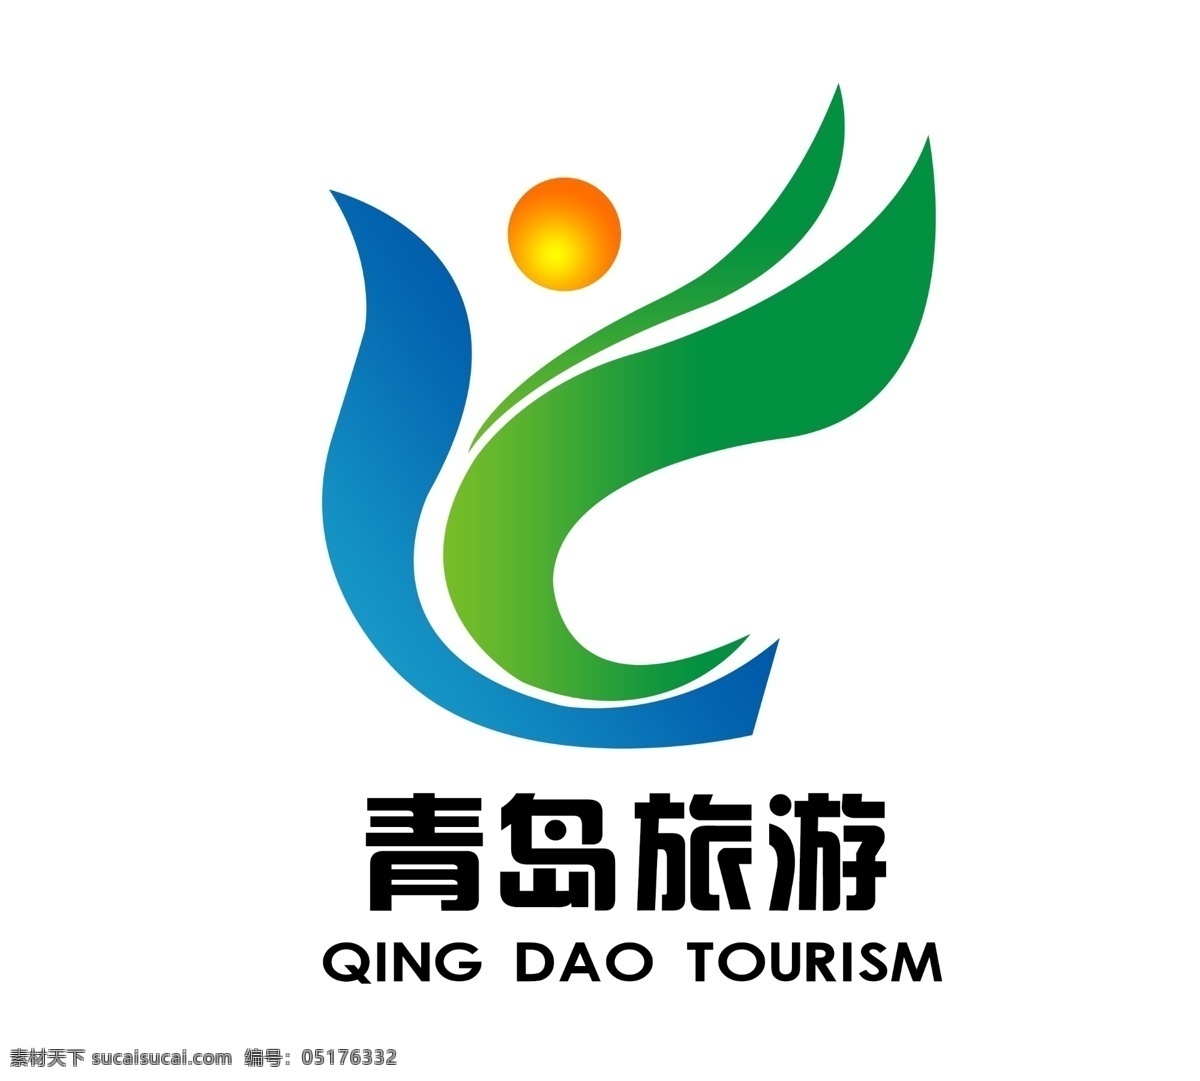 旅游标志 旅游 旅游团 户外旅游 导游 旅行标志 旅行 logo设计